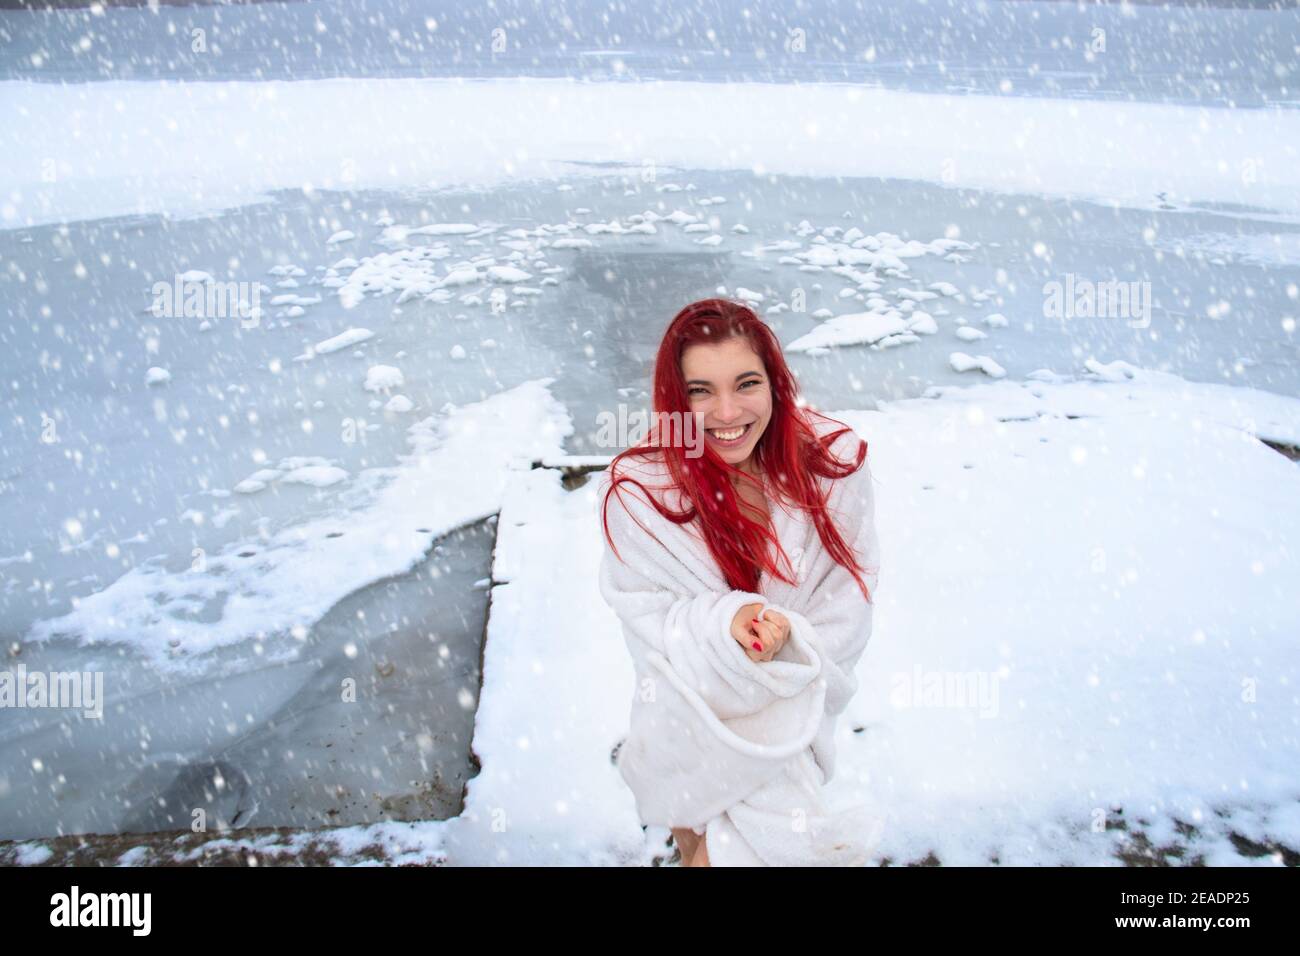 Glückliche junge Frau mit langen roten Haaren, nur in einer Decke mit einem fröhlichen Lächeln gewickelt genießt natürliche Kälte-Therapie und Schneedusche im Winter im Freien Stockfoto